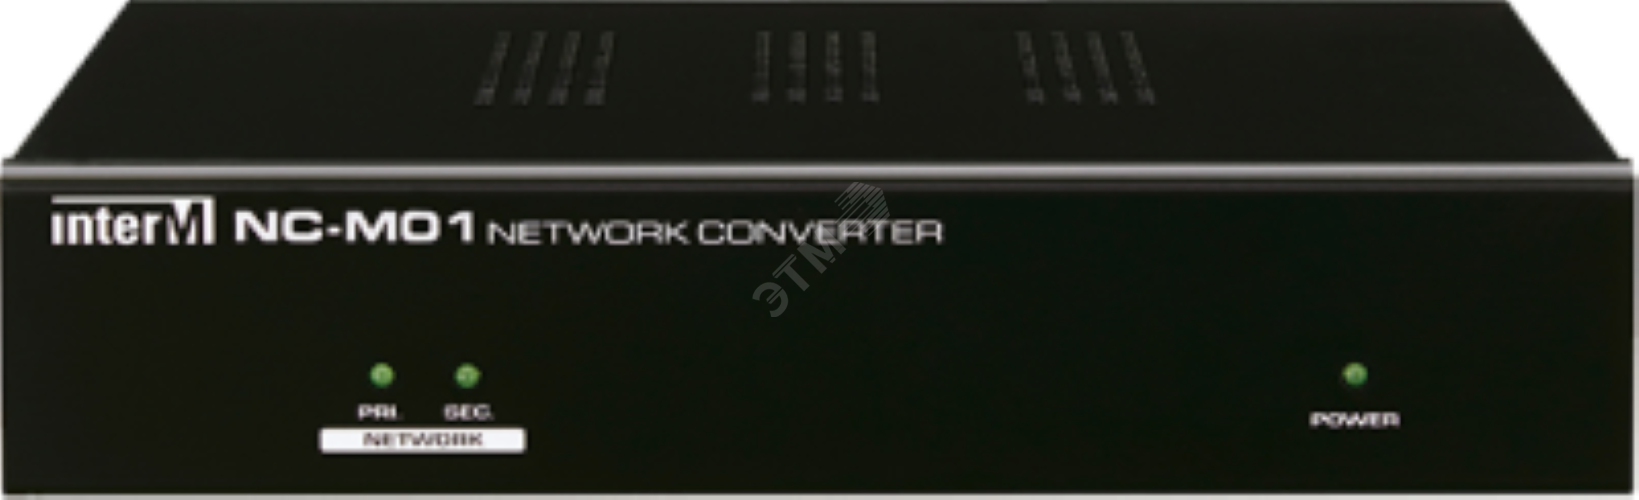 Конвертер NCS для подключения микрофонной консоли, лин. вход, 16 упр. входов NC-M01 Inter-M